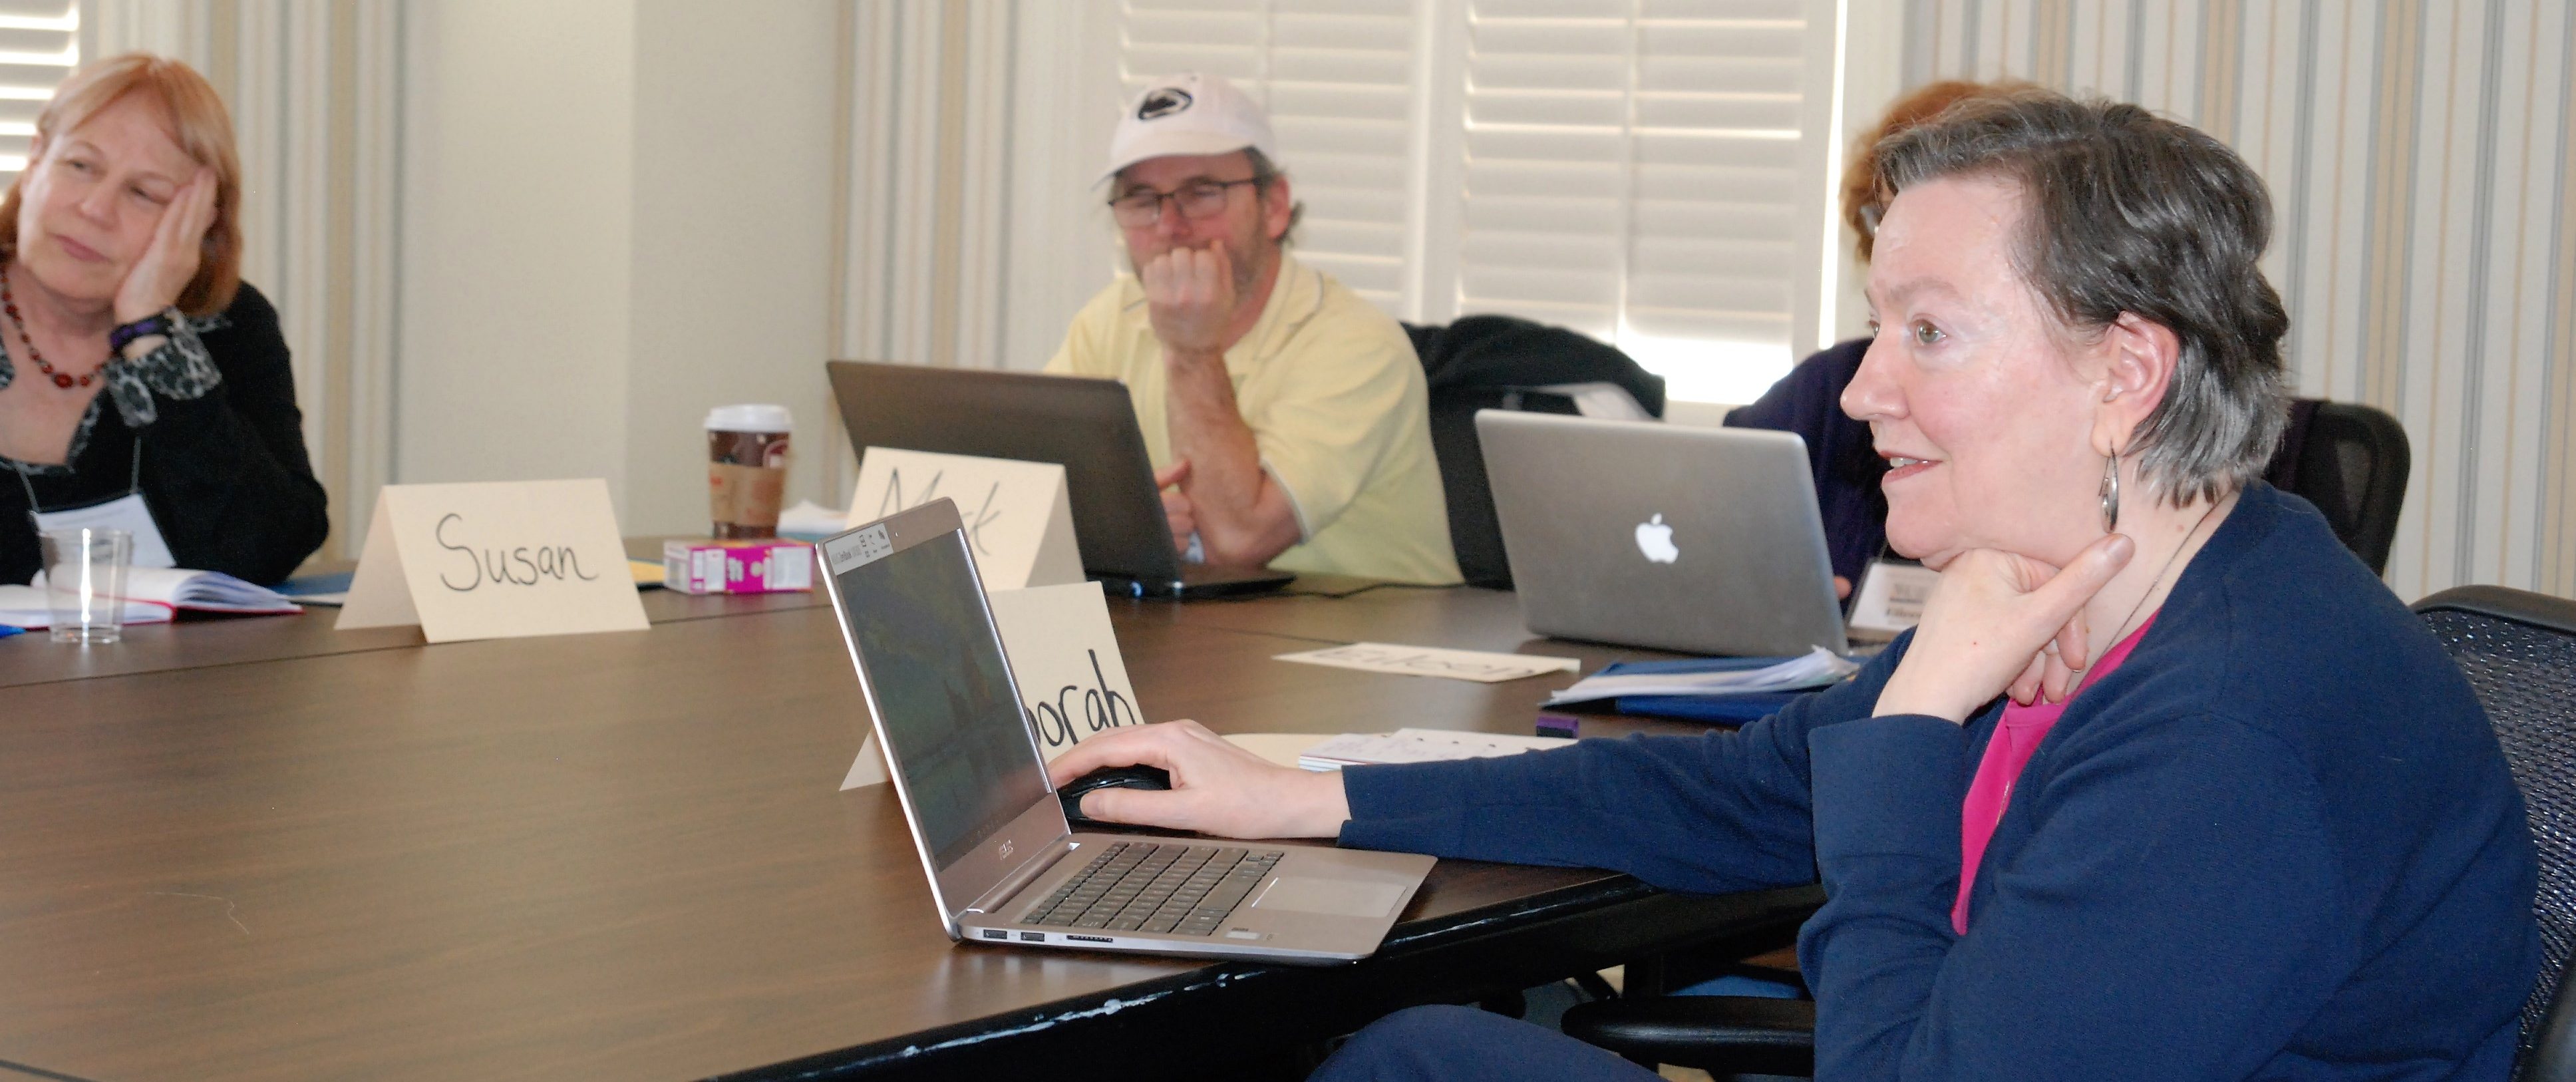 NJ writing workshop participants